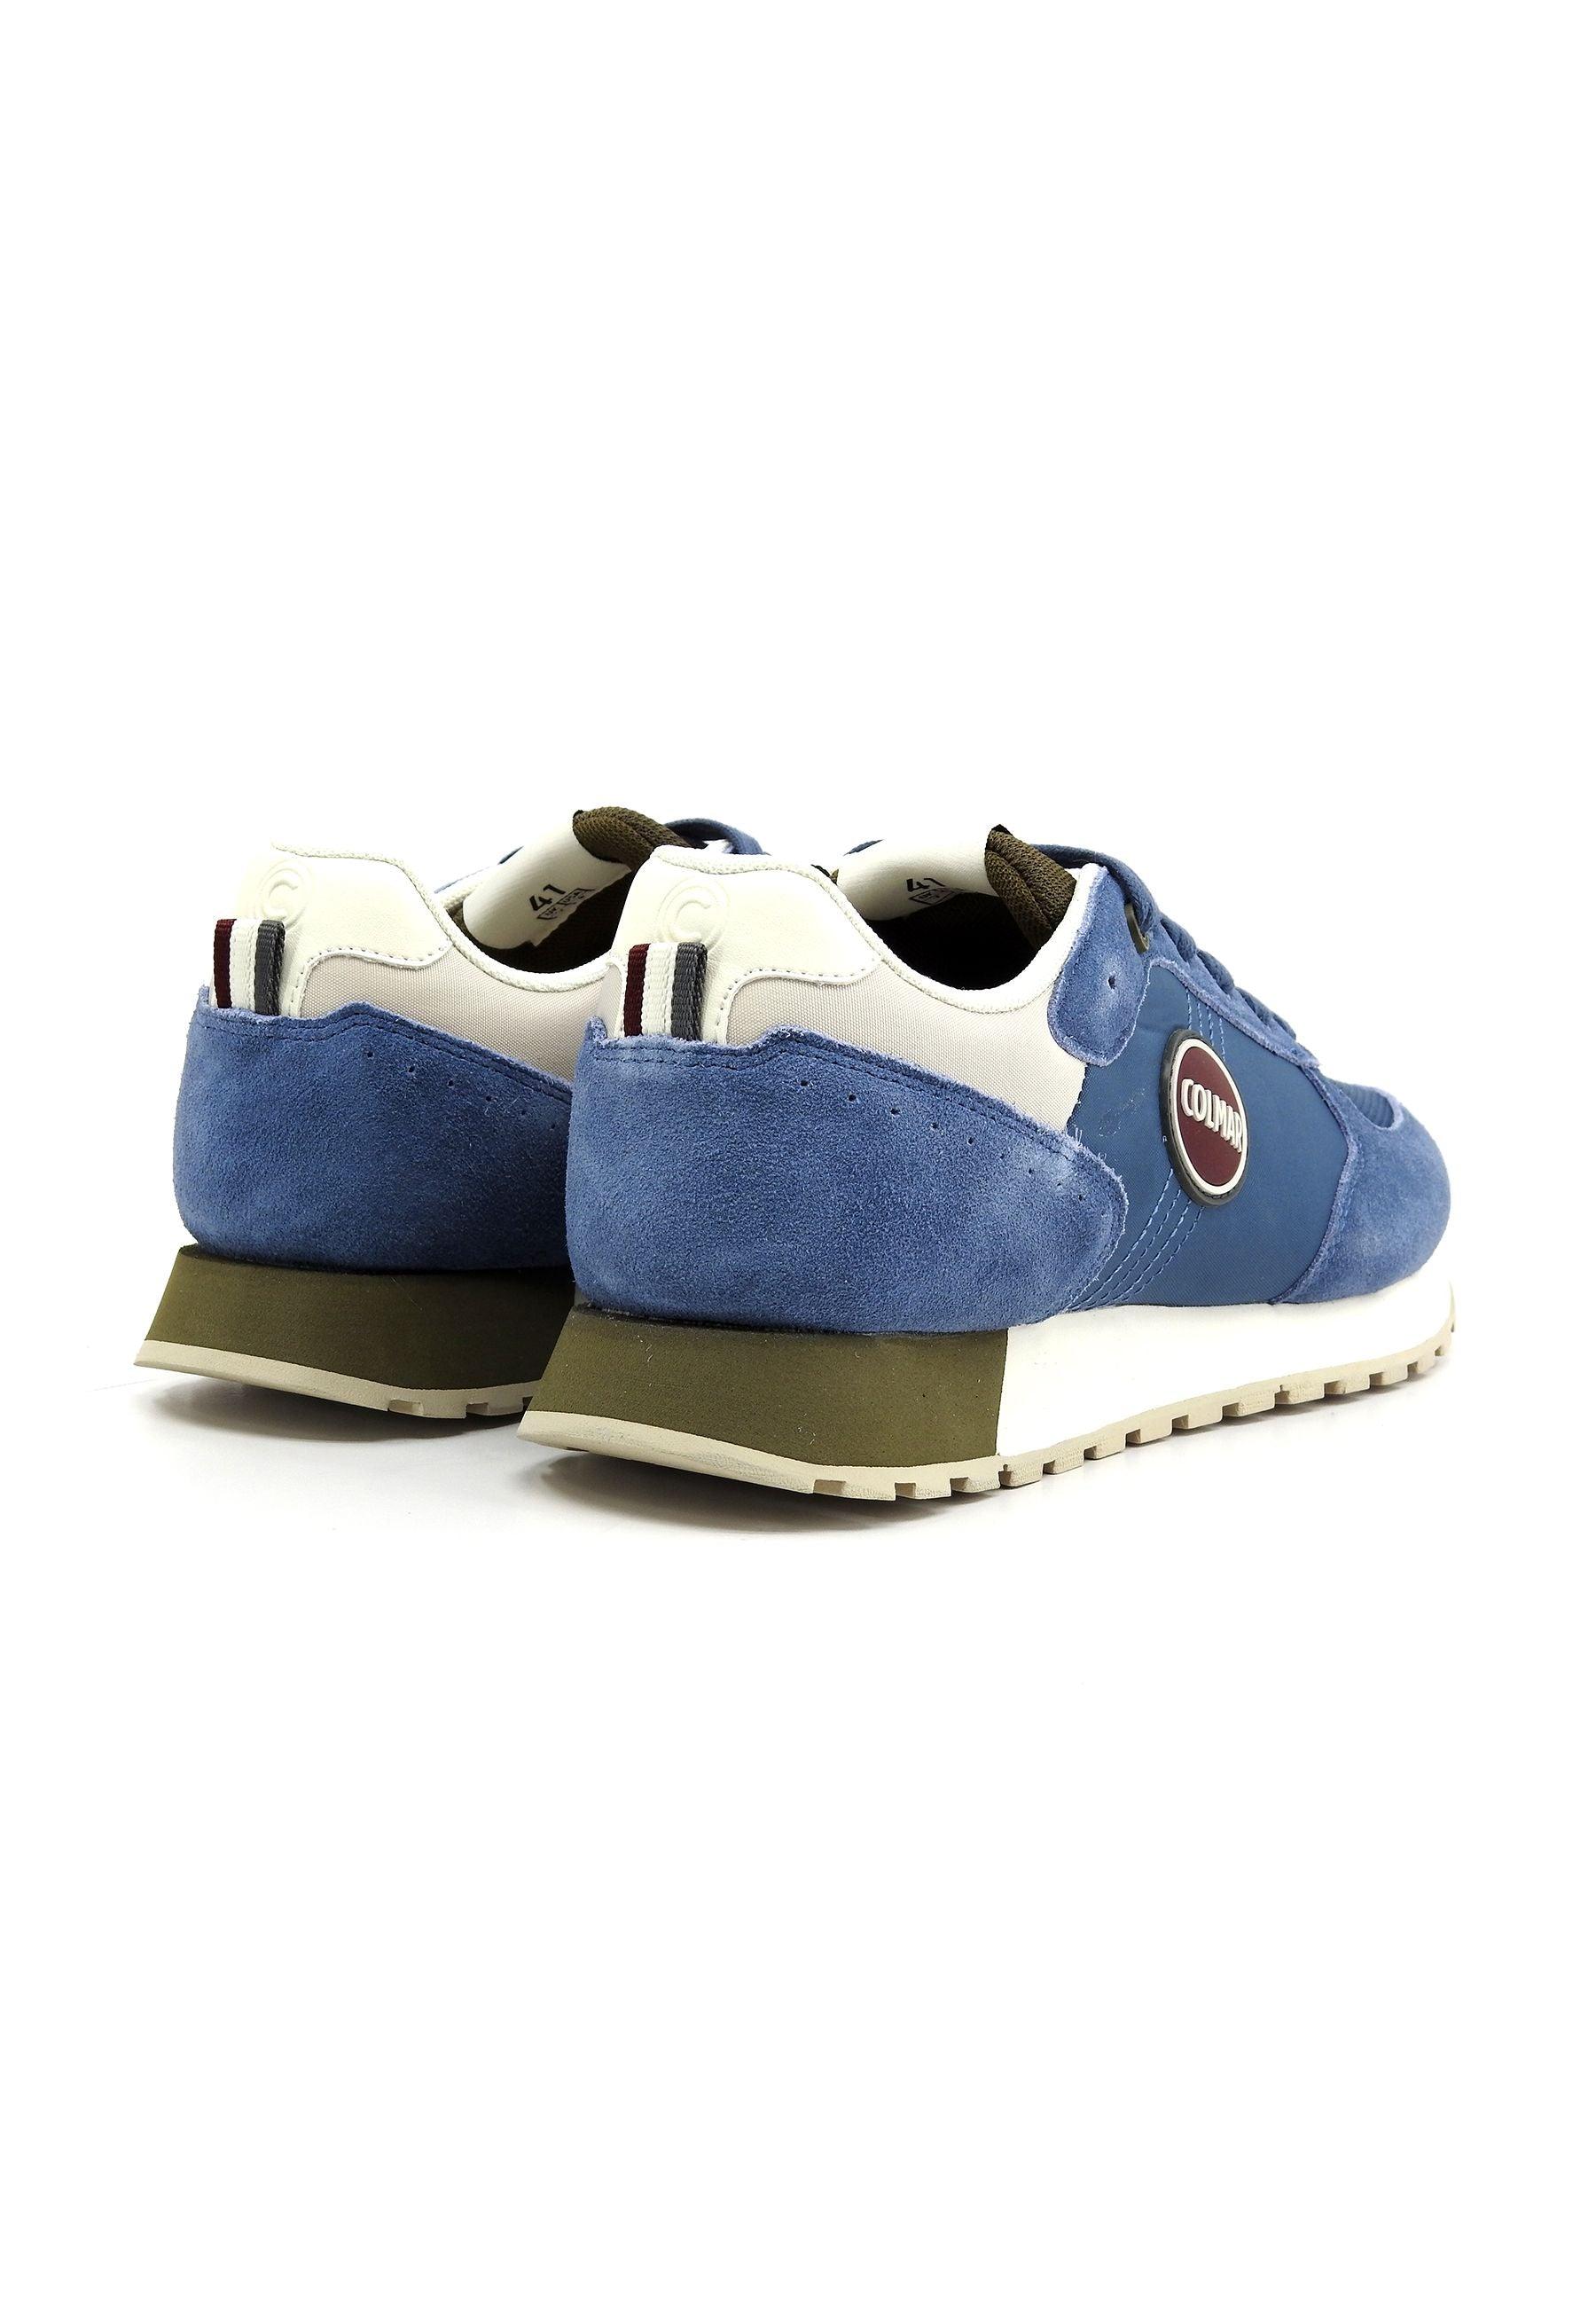 COLMAR Sneaker Uomo Denim Blue Green Beige TRAVIS AUTHETIC - Sandrini Calzature e Abbigliamento